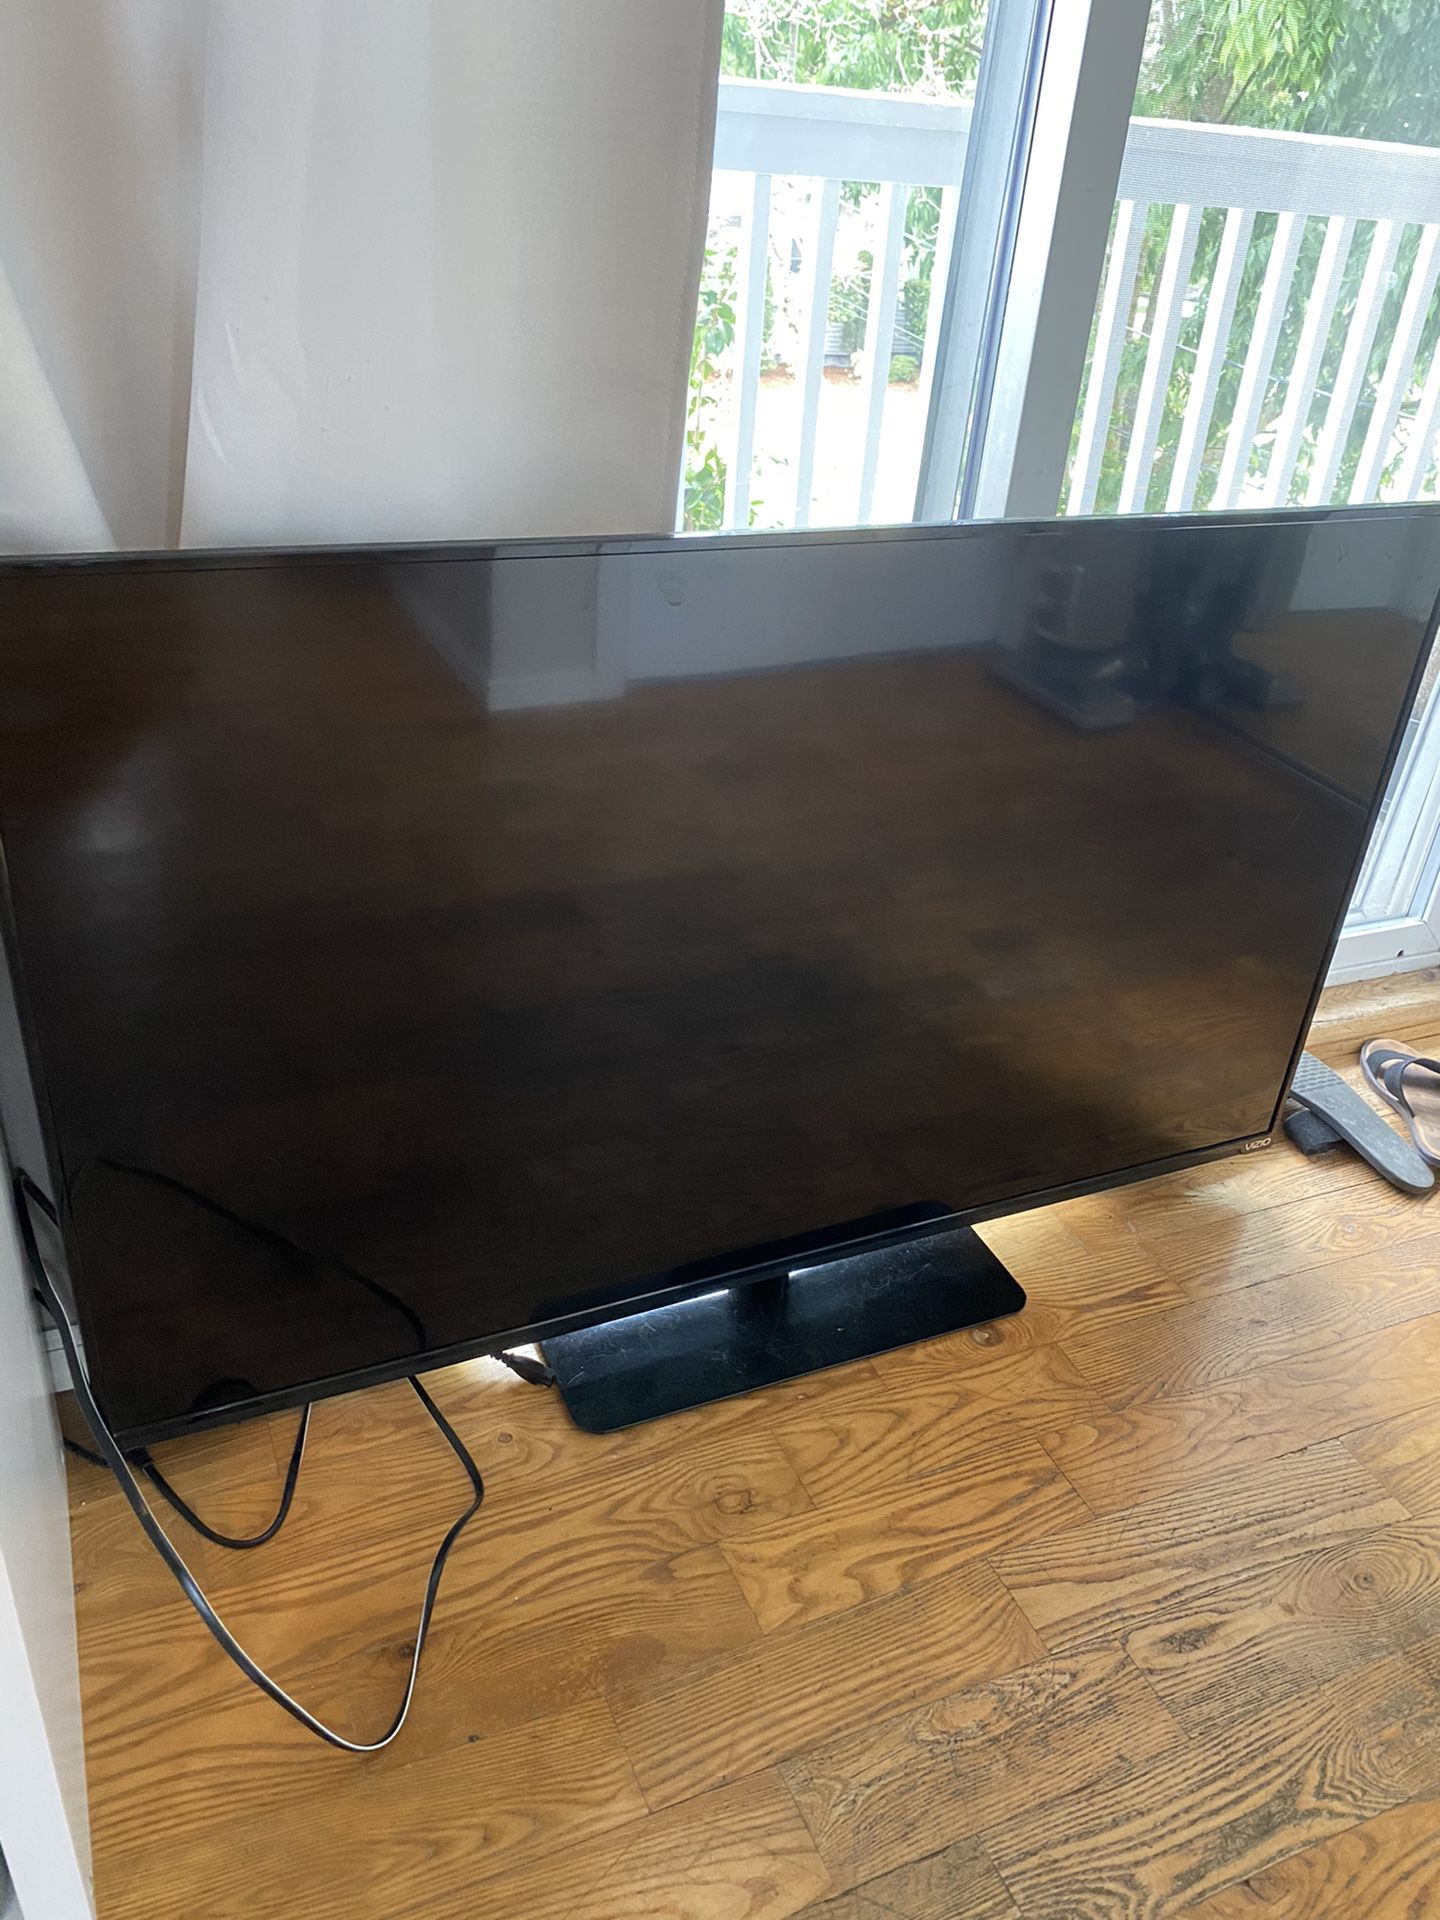 Vizio 48 inch smart tv perfect condition